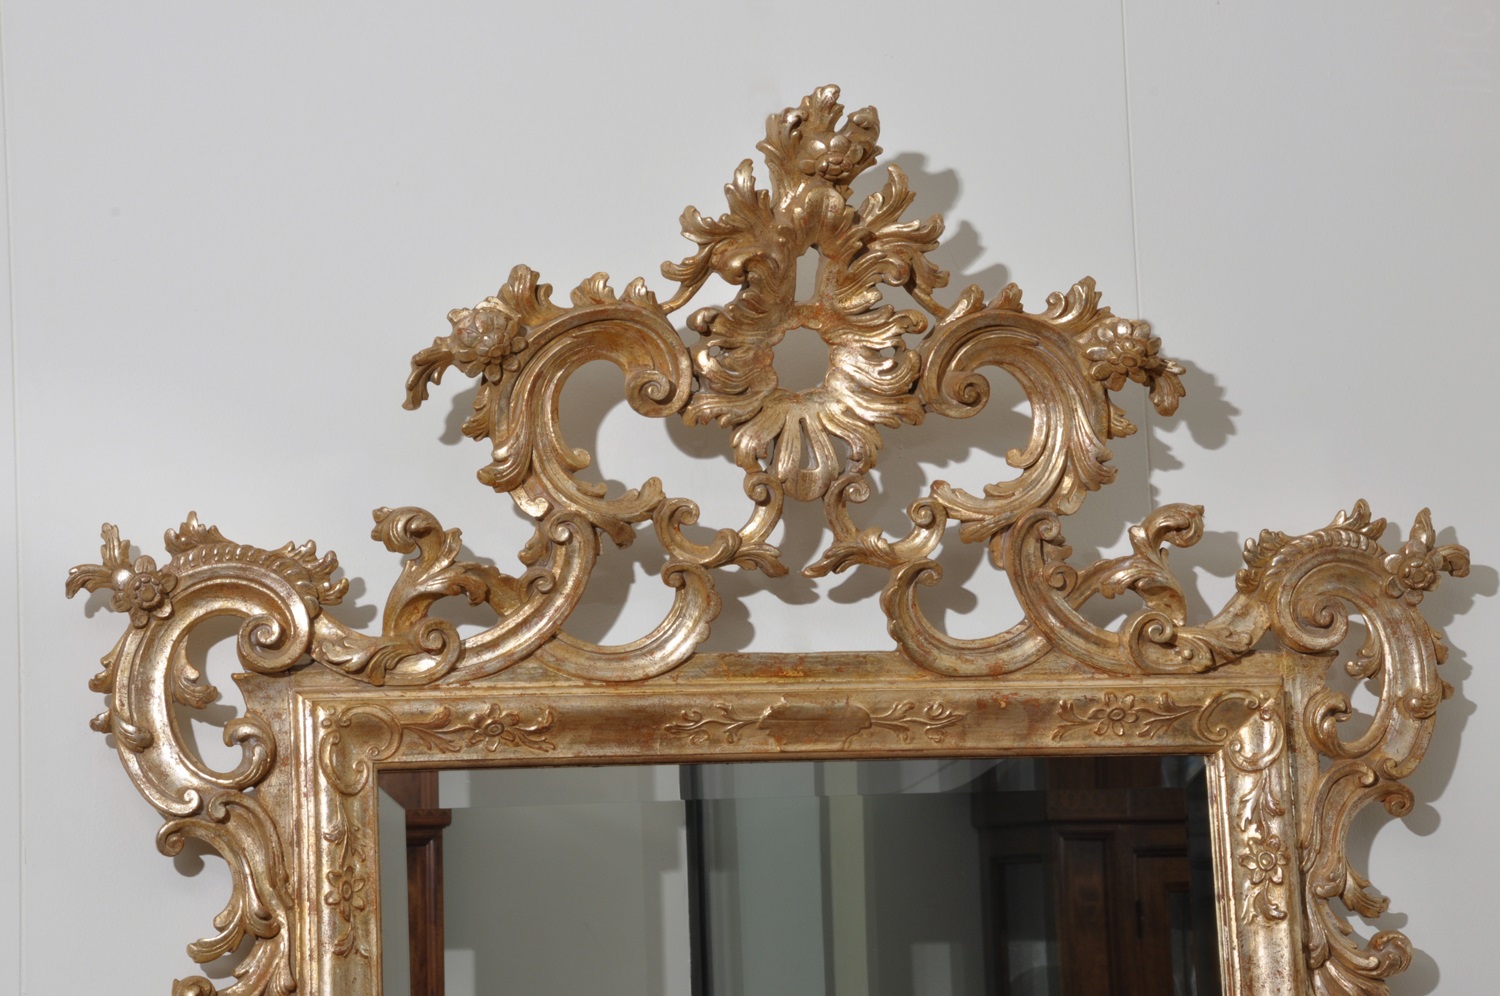 specchiera made in Italy prodotta intagliata e sagomata a mano in stile veneziano Luigi XV arredo di lusso per importanti e prestigiosi ingressi costruita artigianalmente